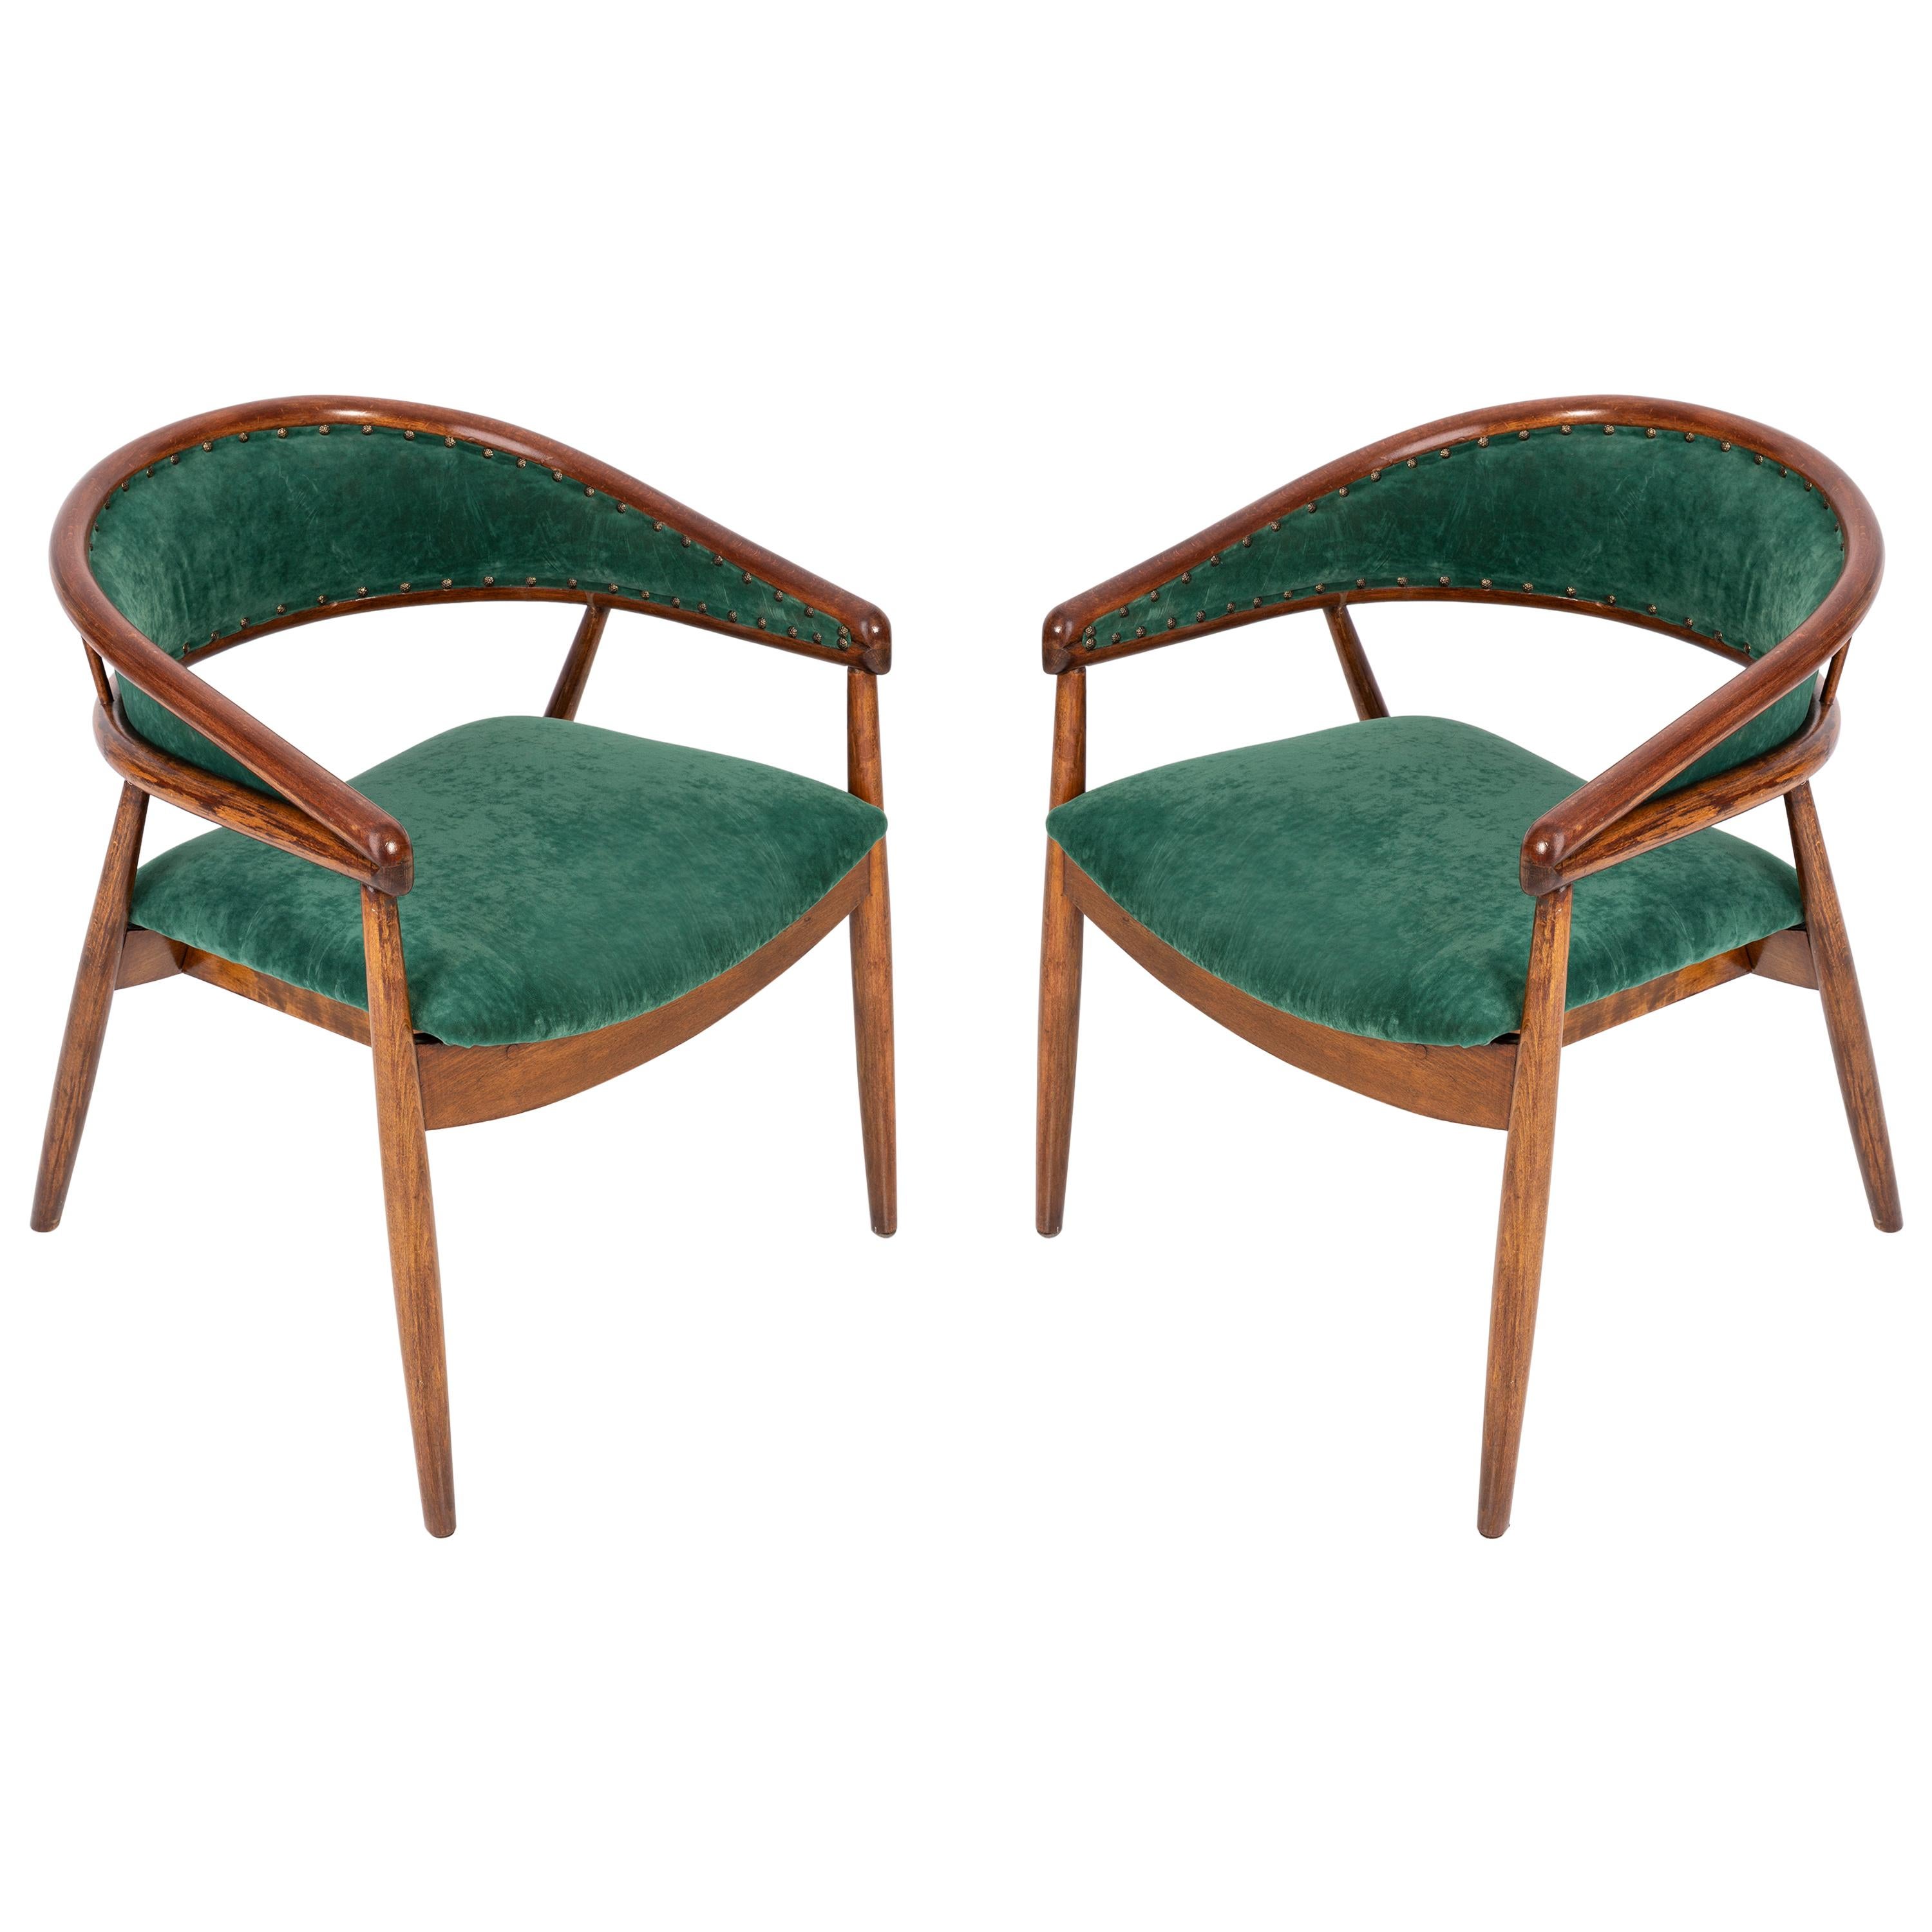 Set of Two James Mont Bent Beech Armchairs, Dark Green, B-3300 Type, 1960s